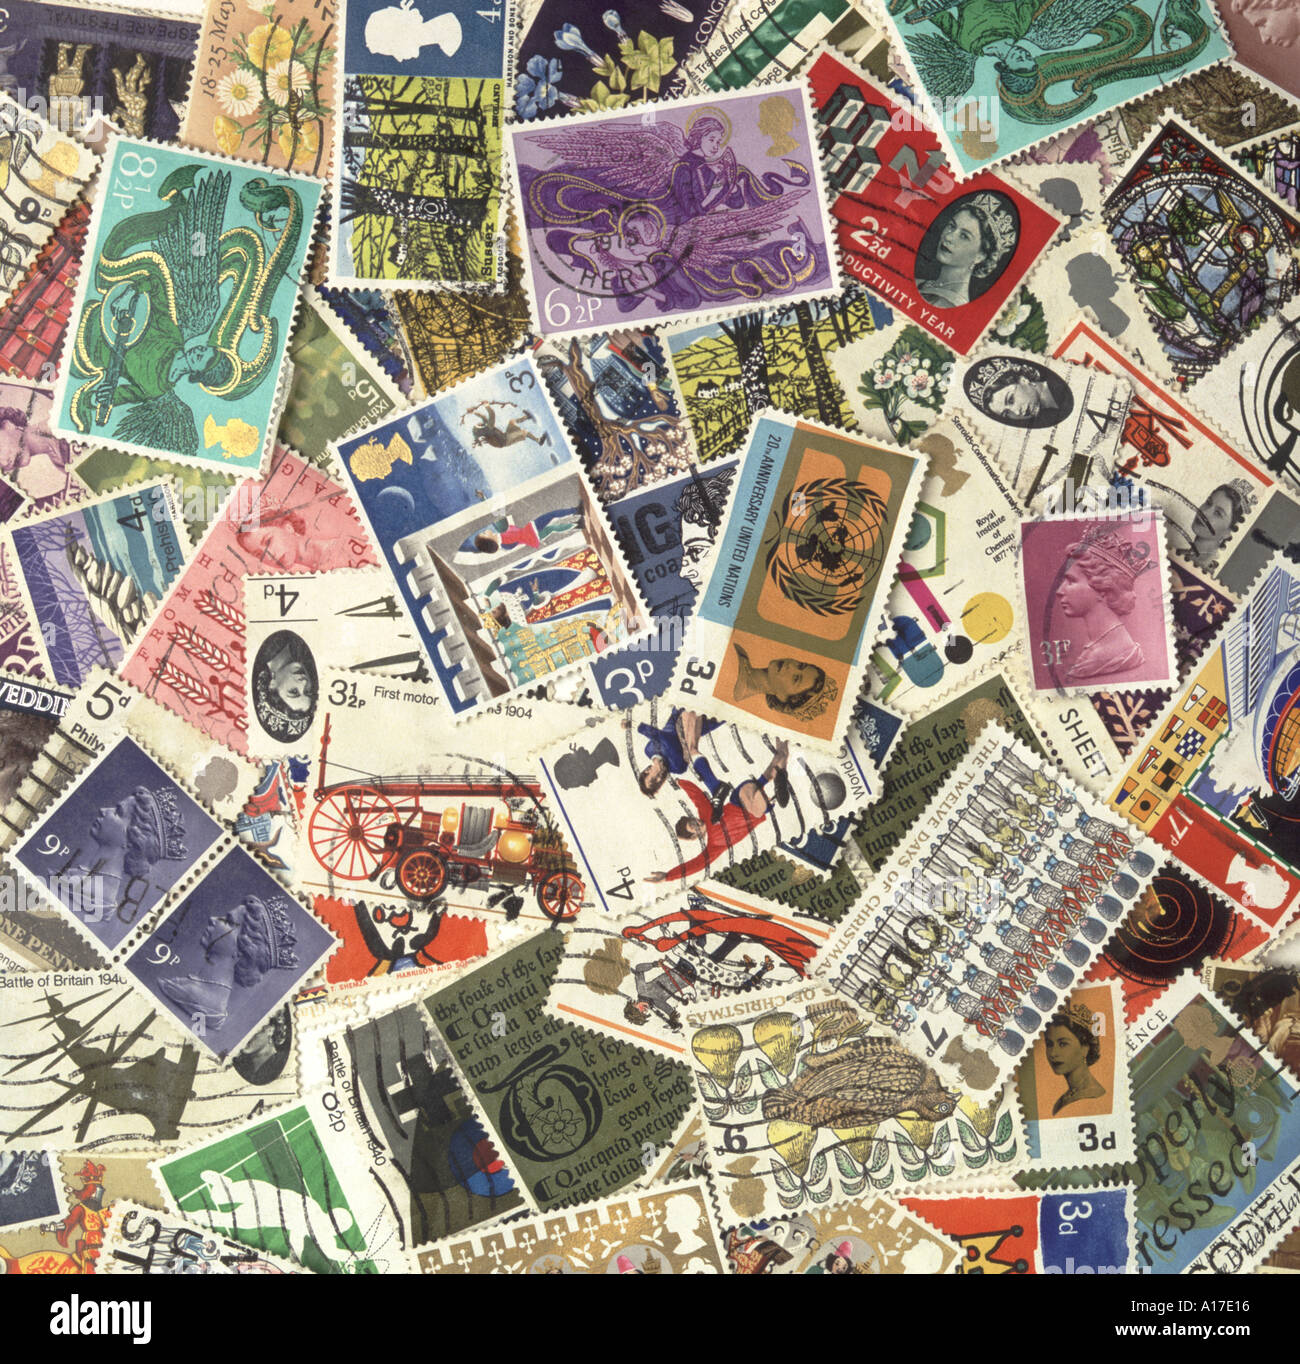 Des timbres britanniques de 1960 s et 1970 s Banque D'Images